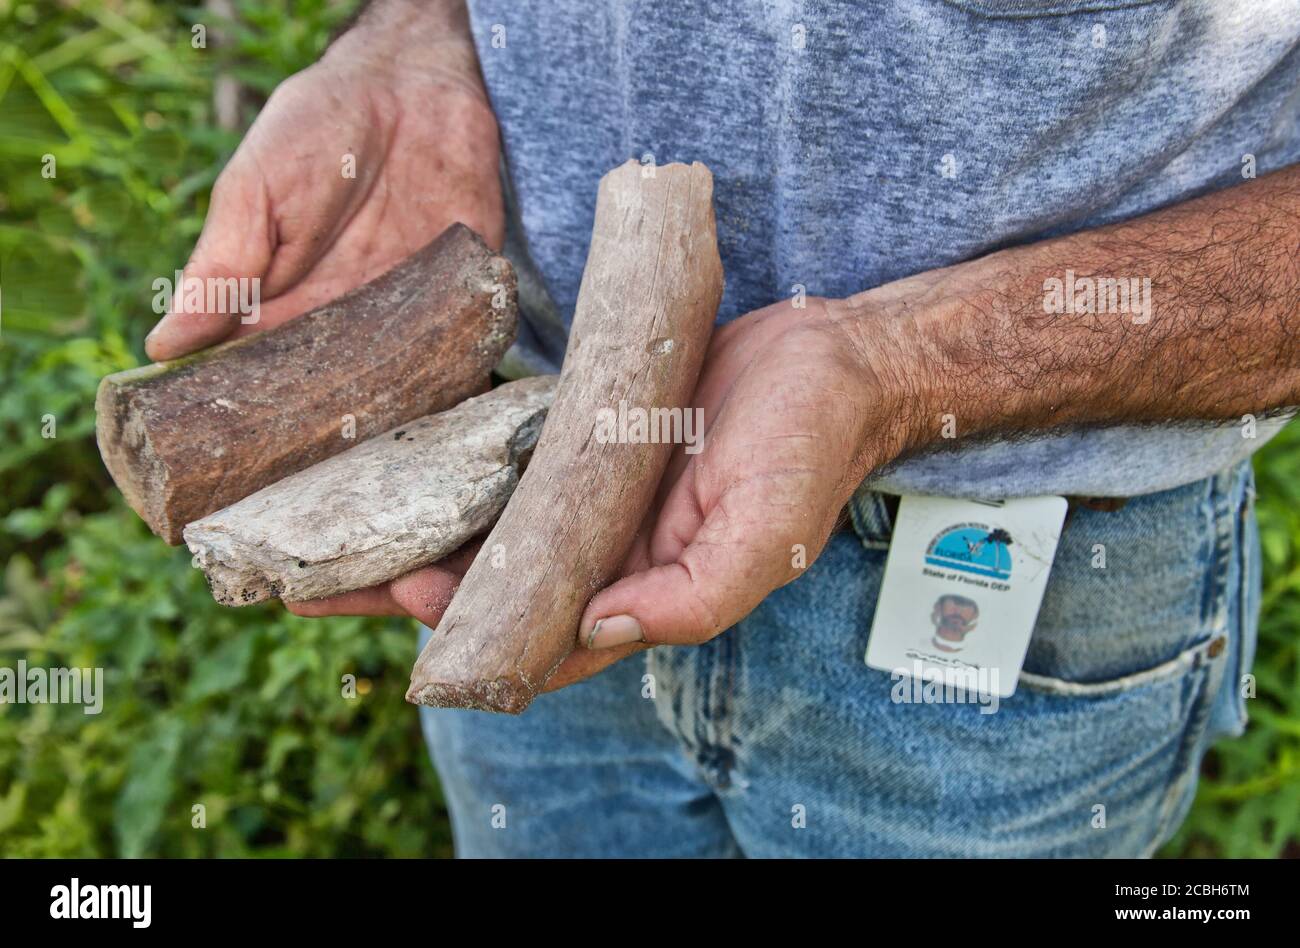 Paléontologue inspectant le spécimen fossile de 'Miocène' trouvé à l'emplacement du gouffre, en Floride. Banque D'Images